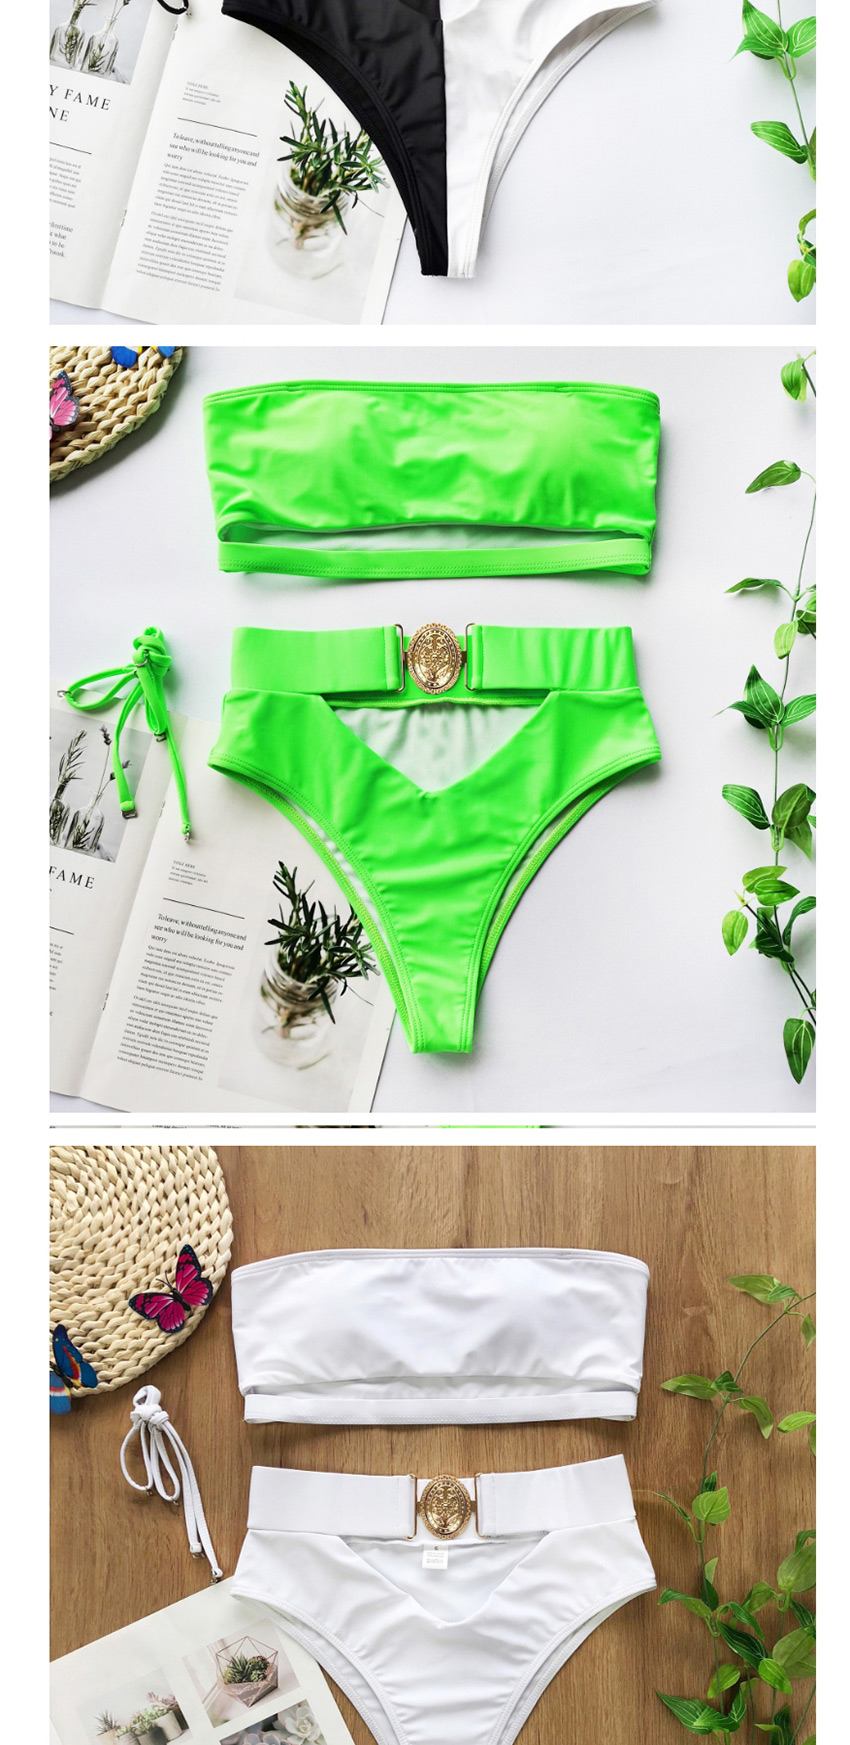 Fashion Crocodile Skin Crocodile-print Leather Tube Top Split Swimsuit,Bikini Sets